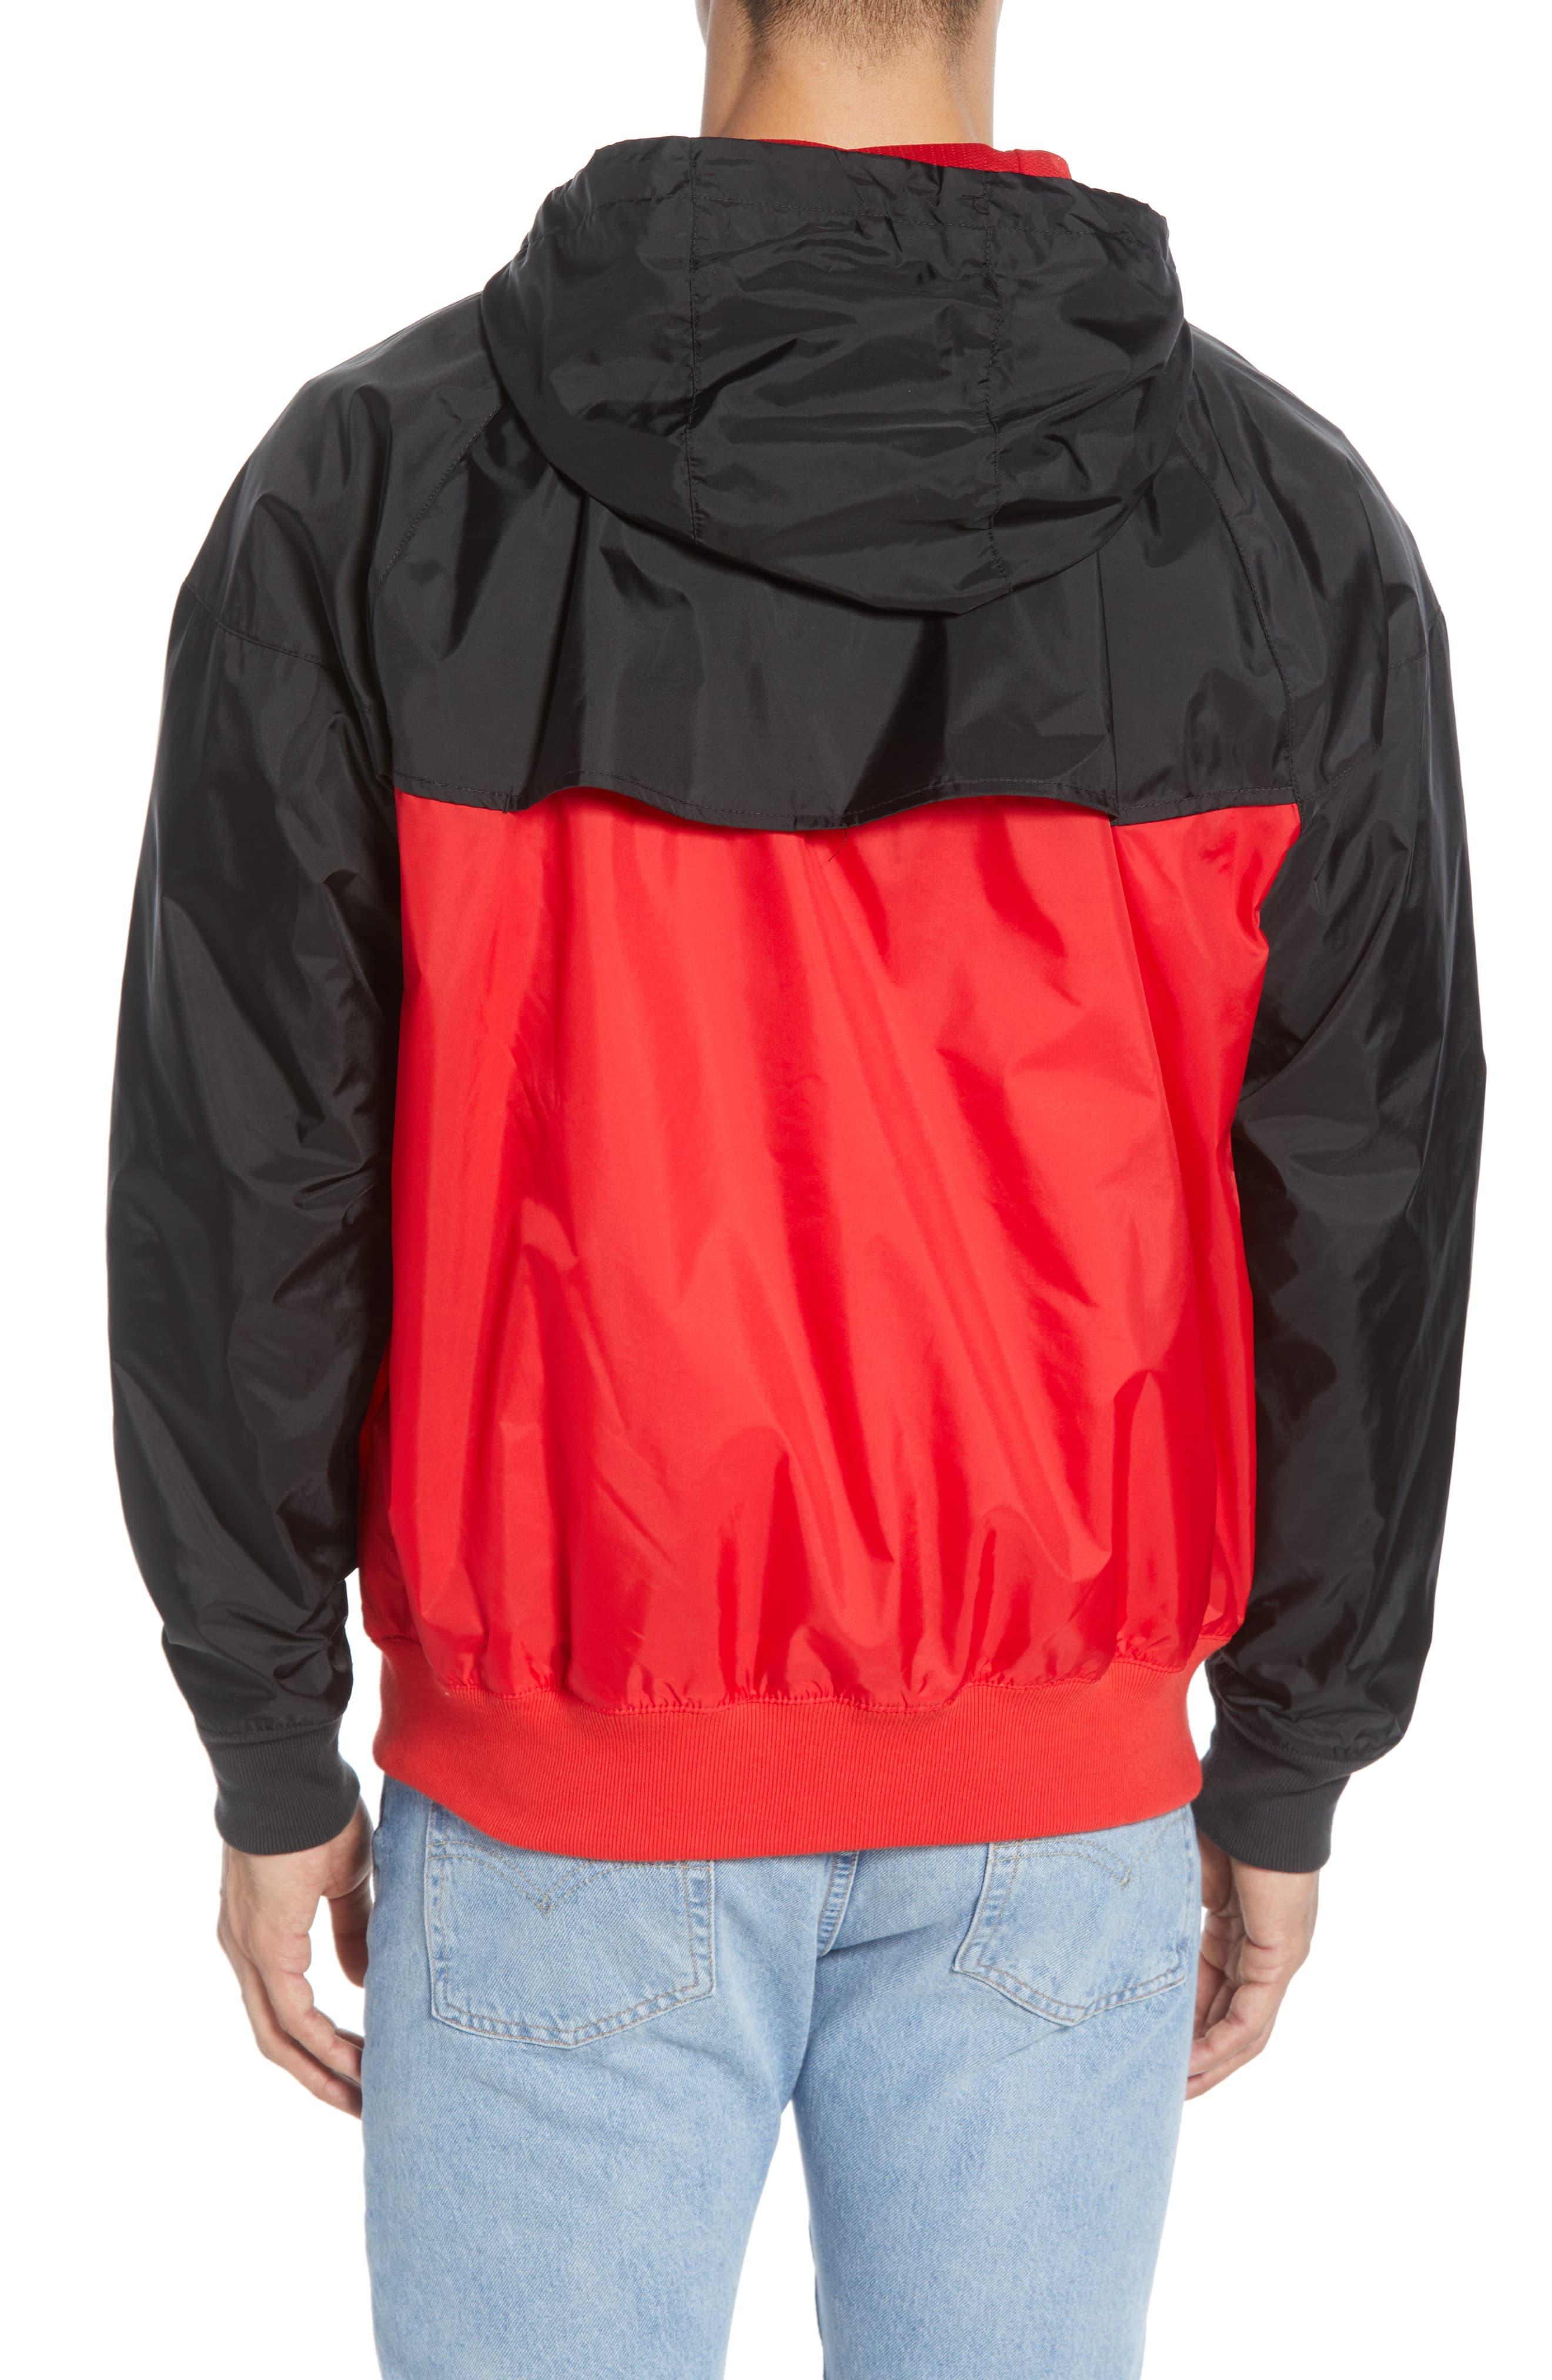 Nike Sportswear Windrunner Jacket in Red for Men - Lyst